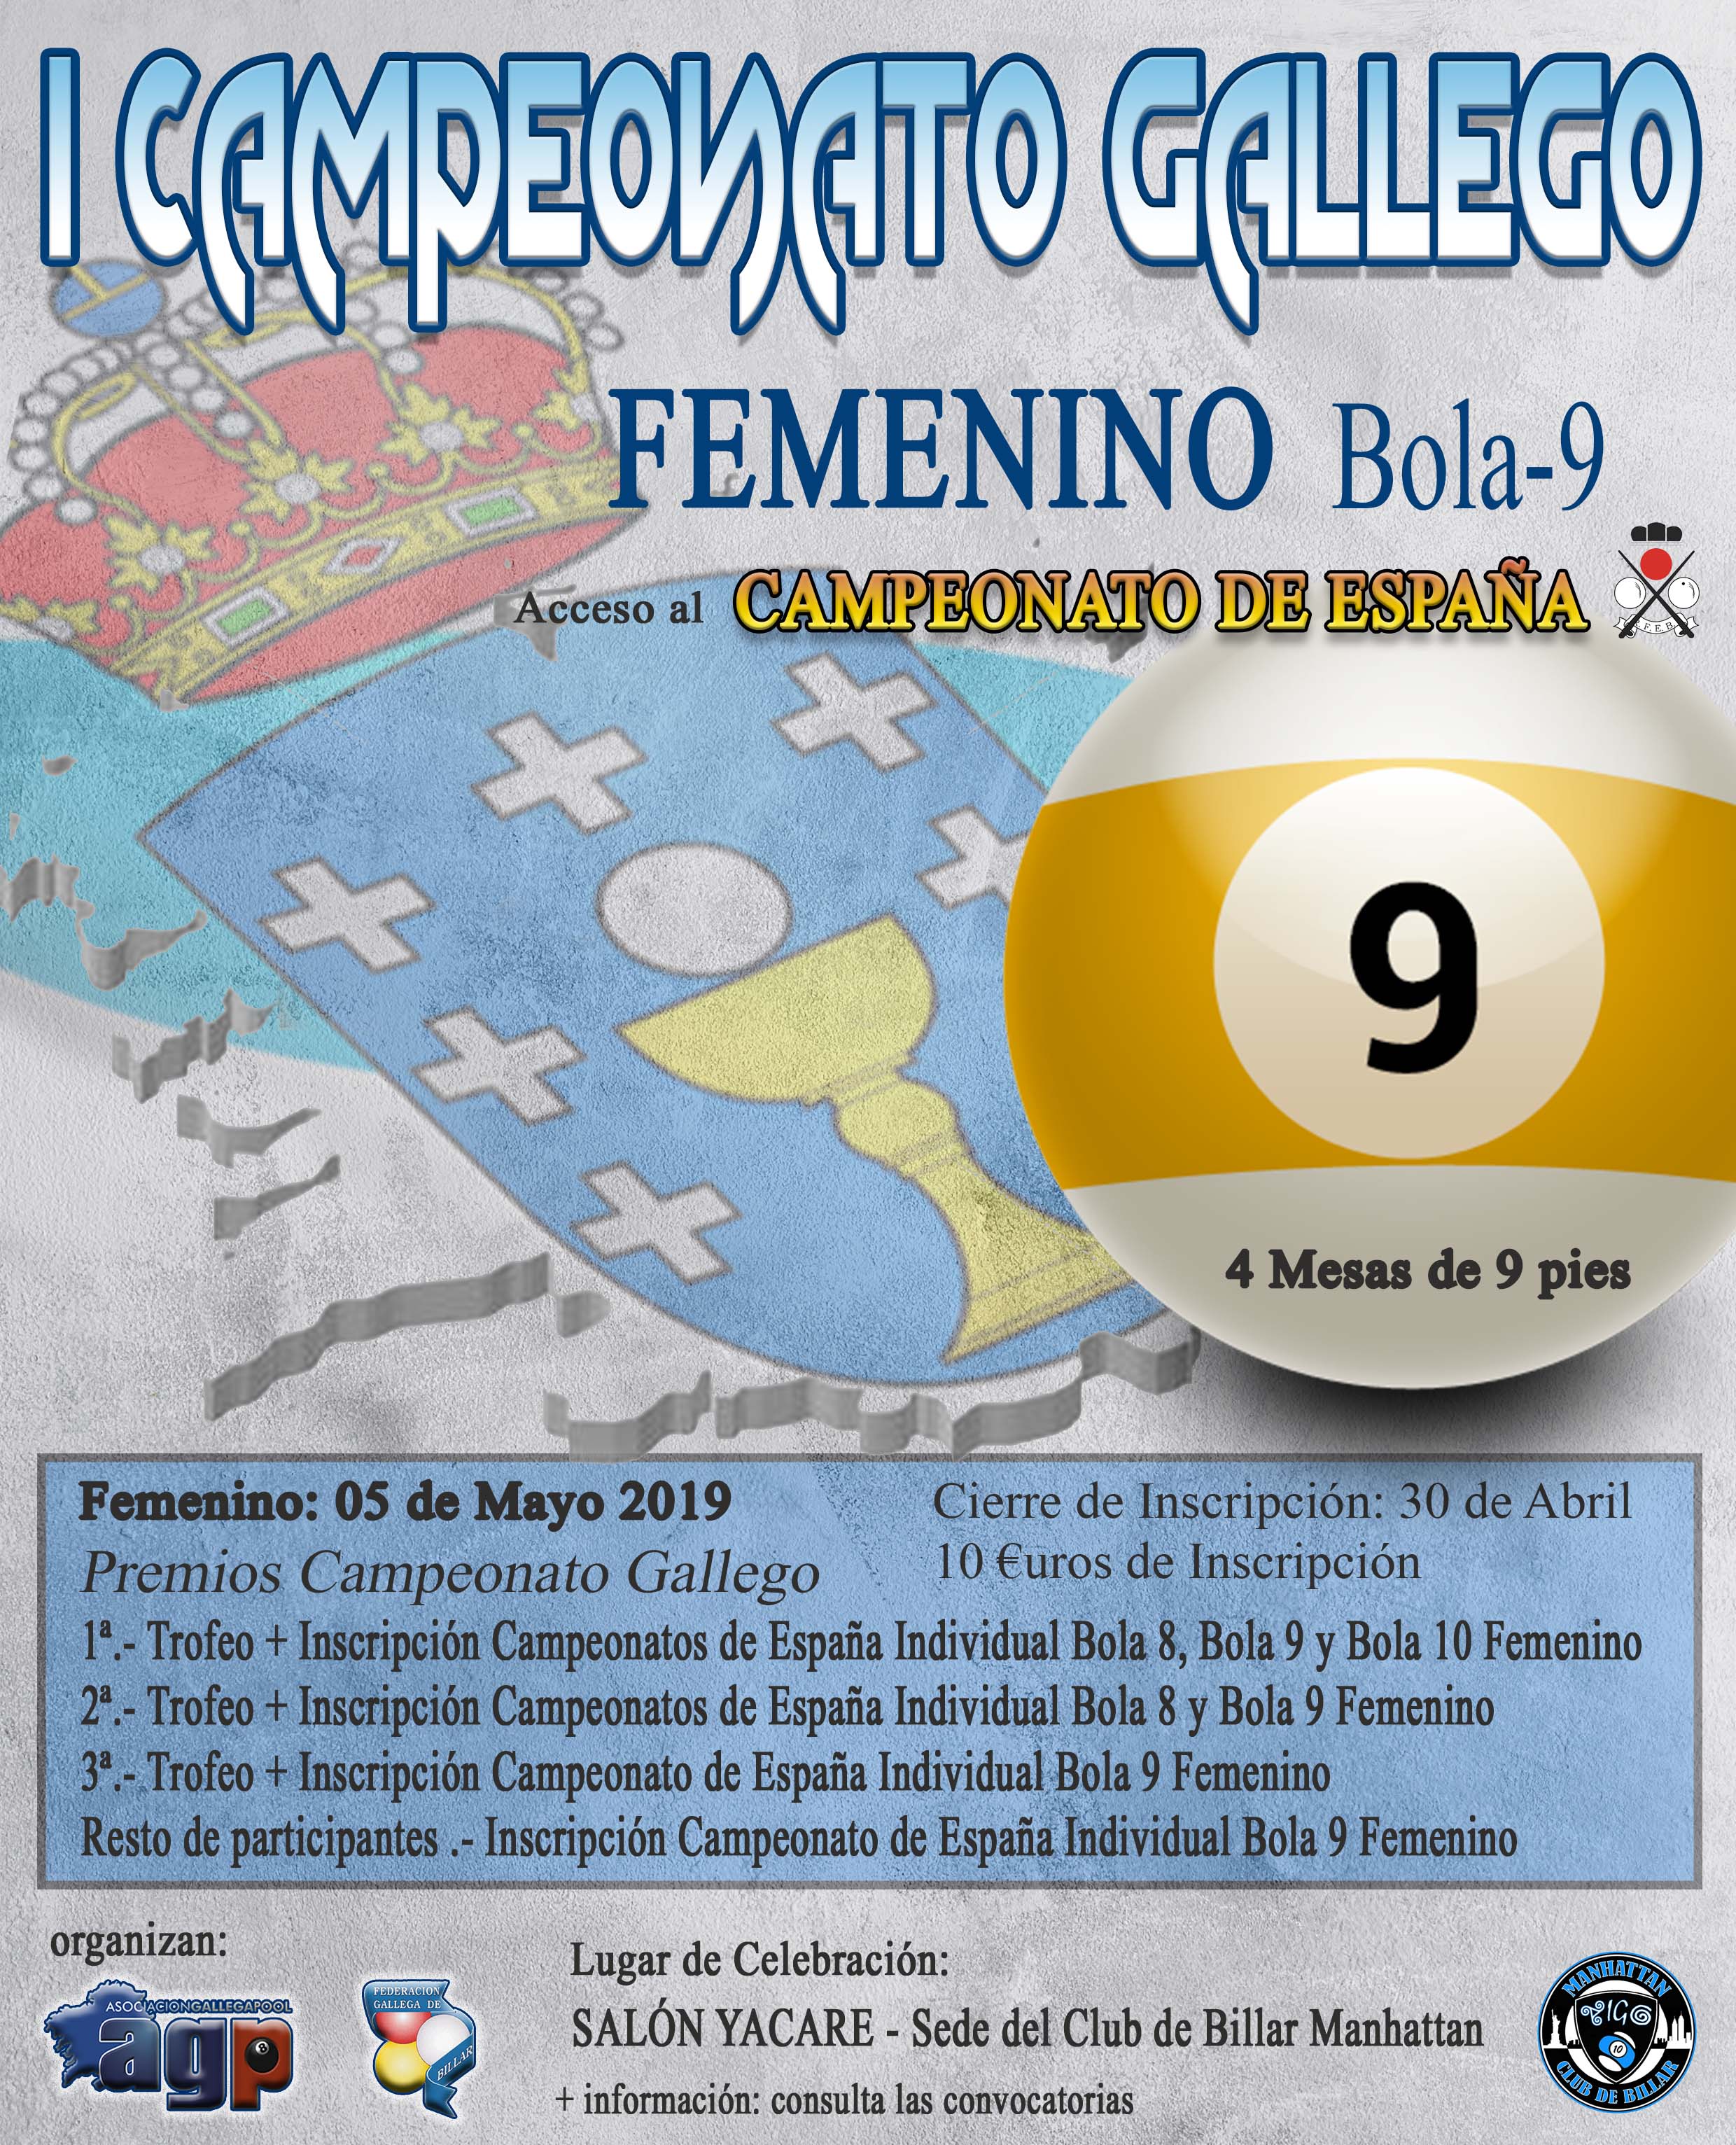 ATENCIÓN - Cambio de Fecha del Campeonato Gallego Femenino Bola-9